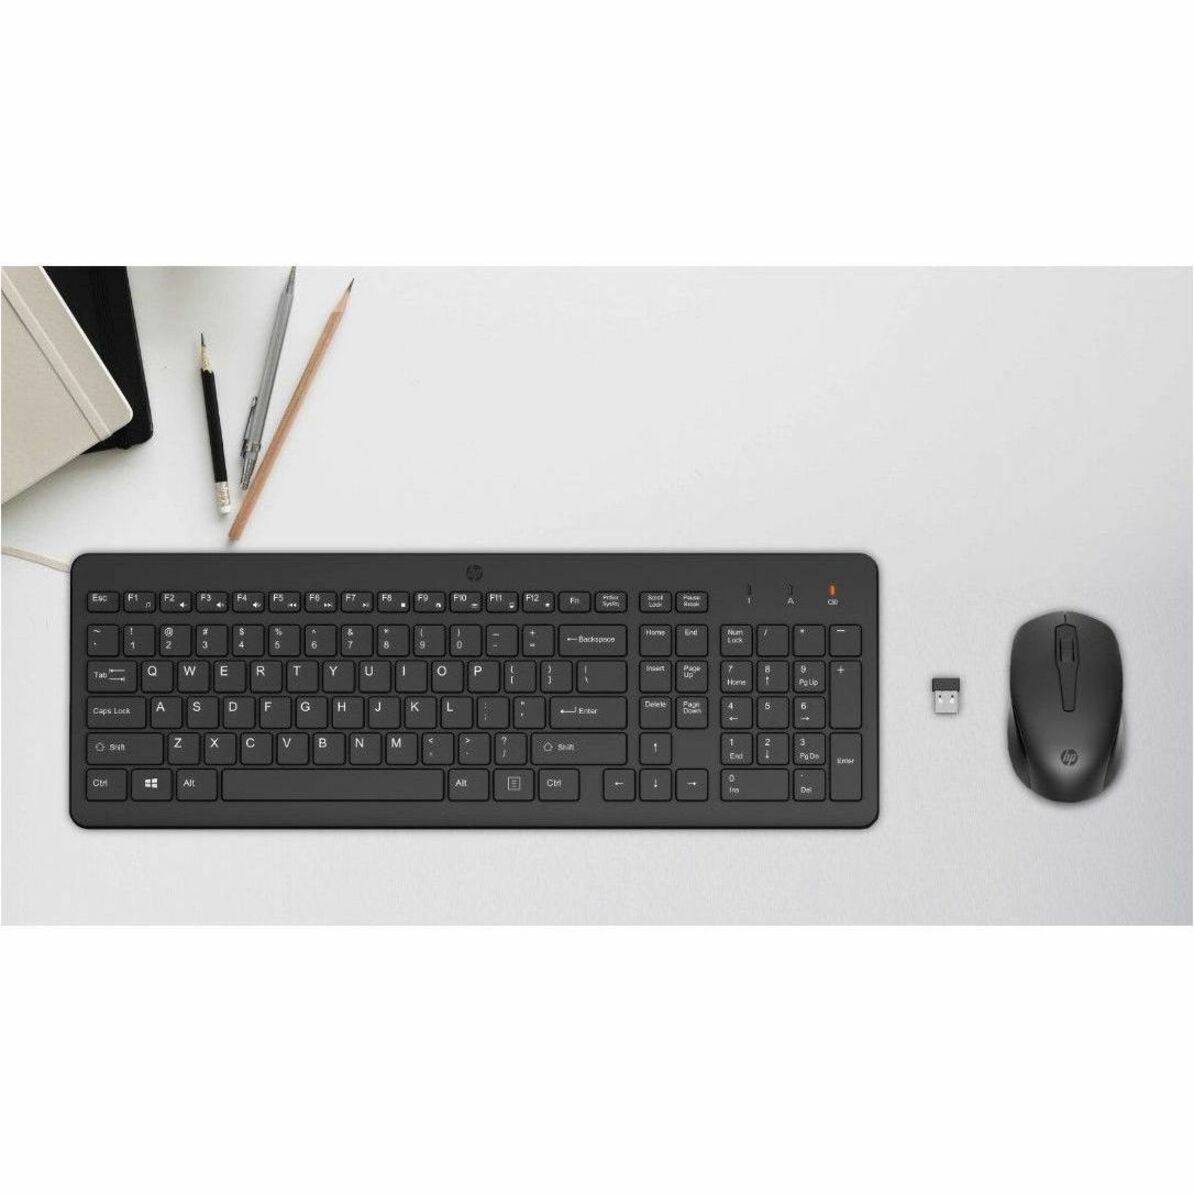 ماوس ولوحة مفاتيح لاسلكية HP 2V9E6AA # ABL 330، مريحة، مؤشر البطارية، لوحة مفاتيح بحجم كامل